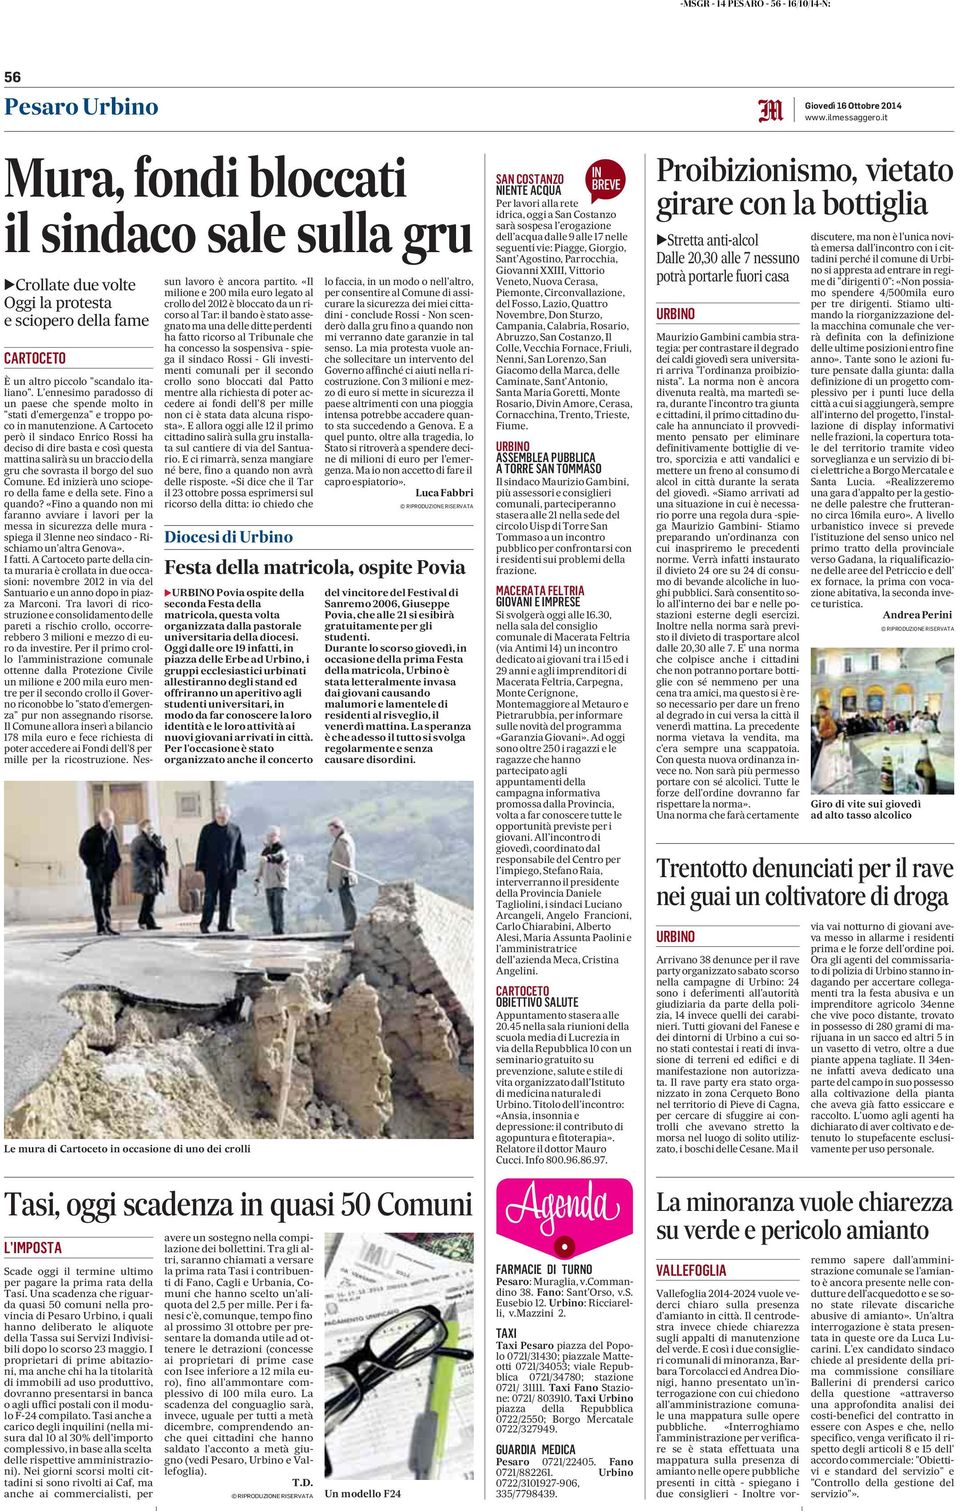 Una scadenza che riguarda quasi 50 comuni nella provincia di Pesaro Urbino, i quali hanno deliberato le aliquote della Tassa sui Servizi Indivisibili dopo lo scorso 23 maggio.